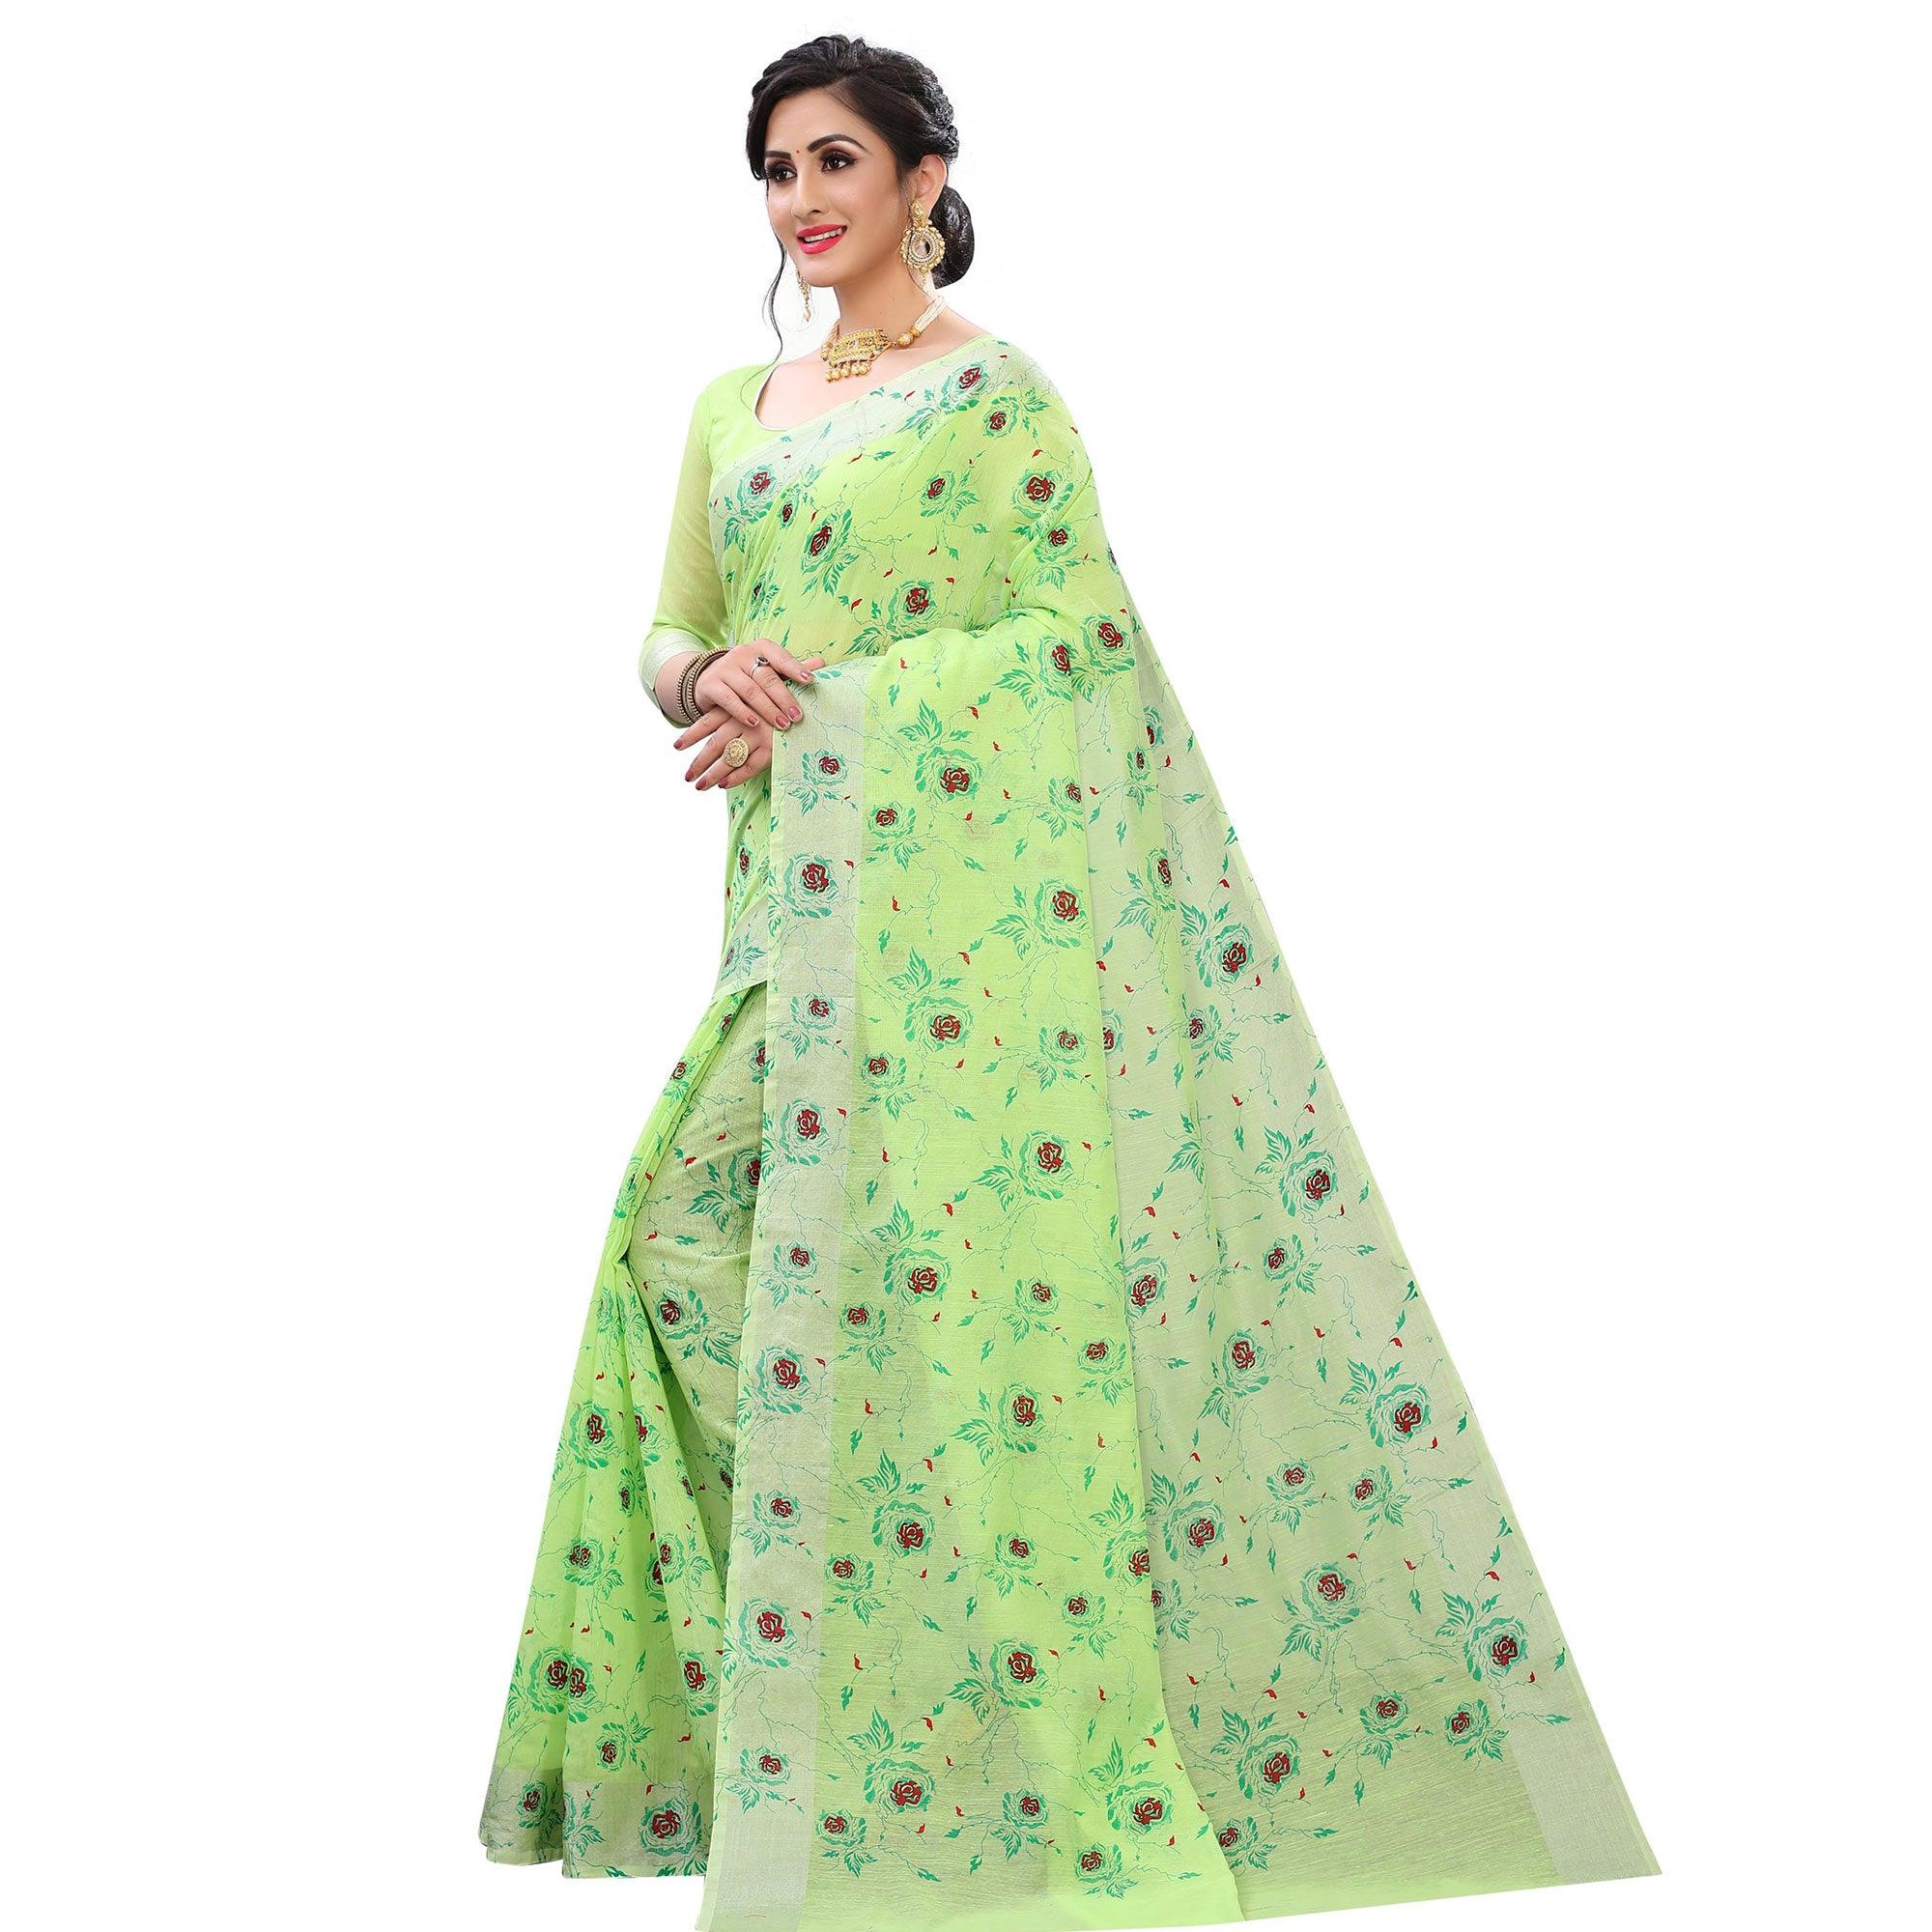 Pleasant Green Colored Casual Wear Printed Cotton Linen Saree - Peachmode